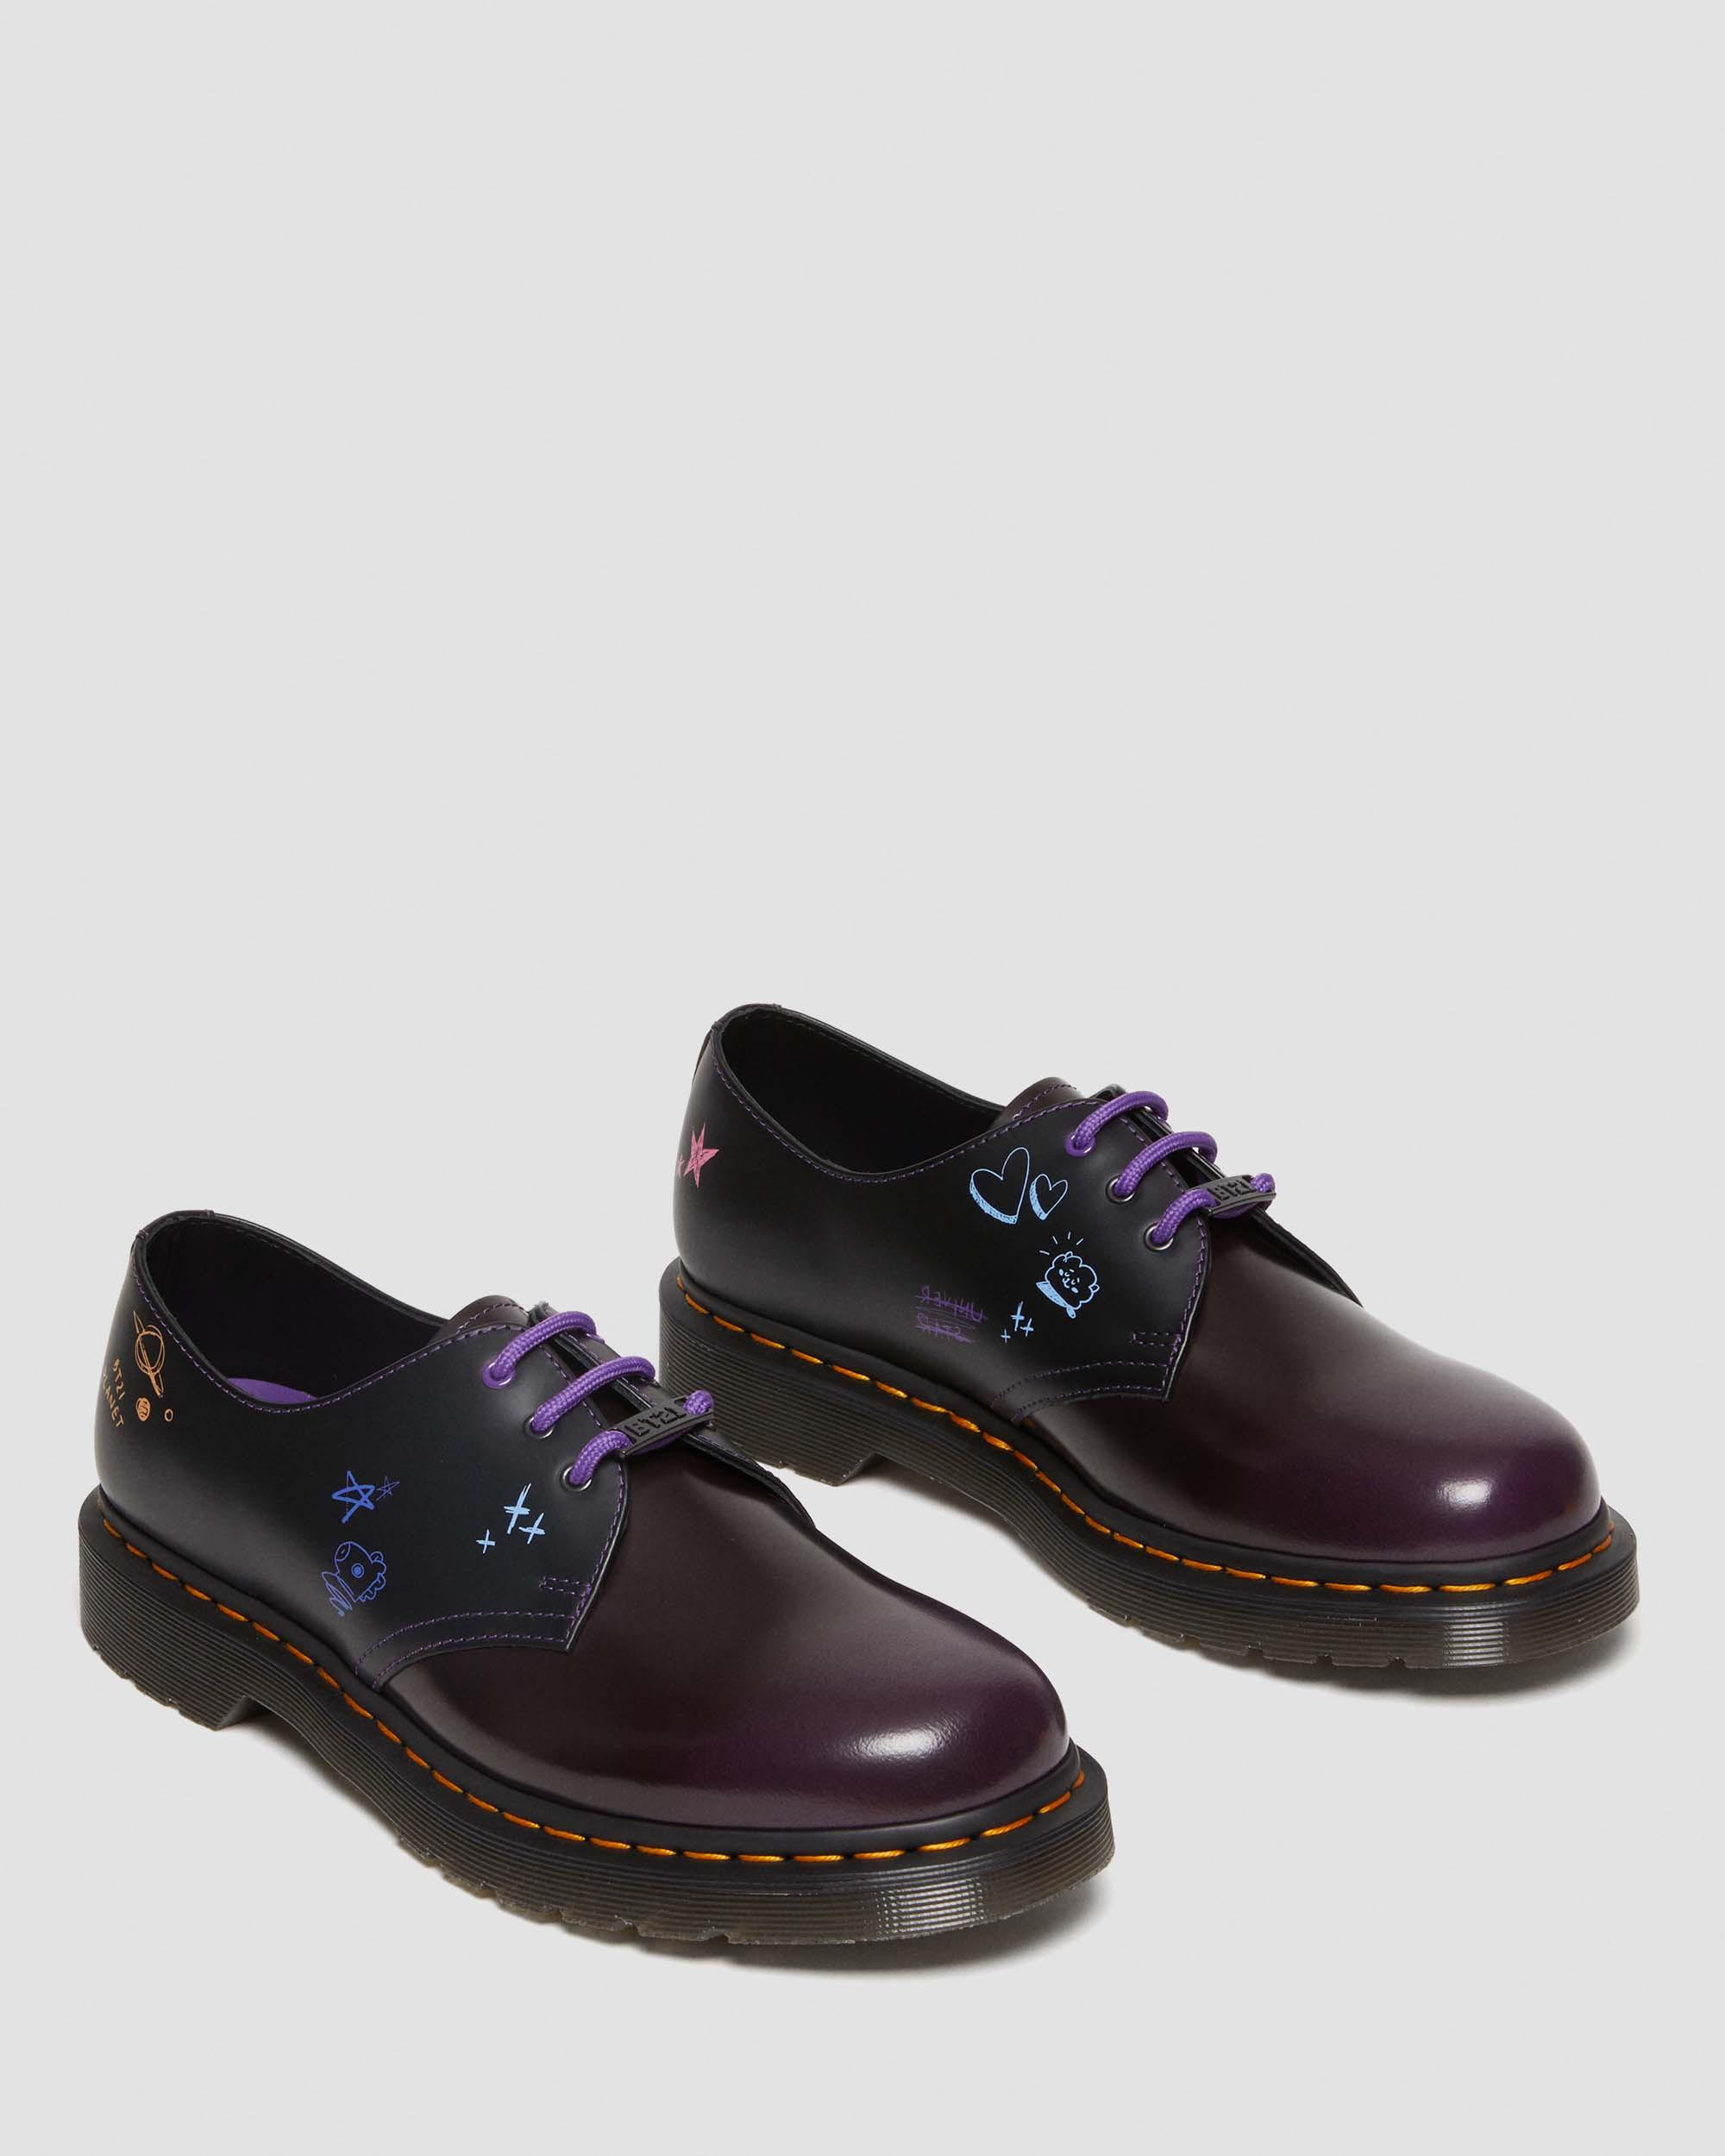 1461 BT21 Leather Oxford Shoes1461 BT21 Leather Oxford Shoes Dr. Martens